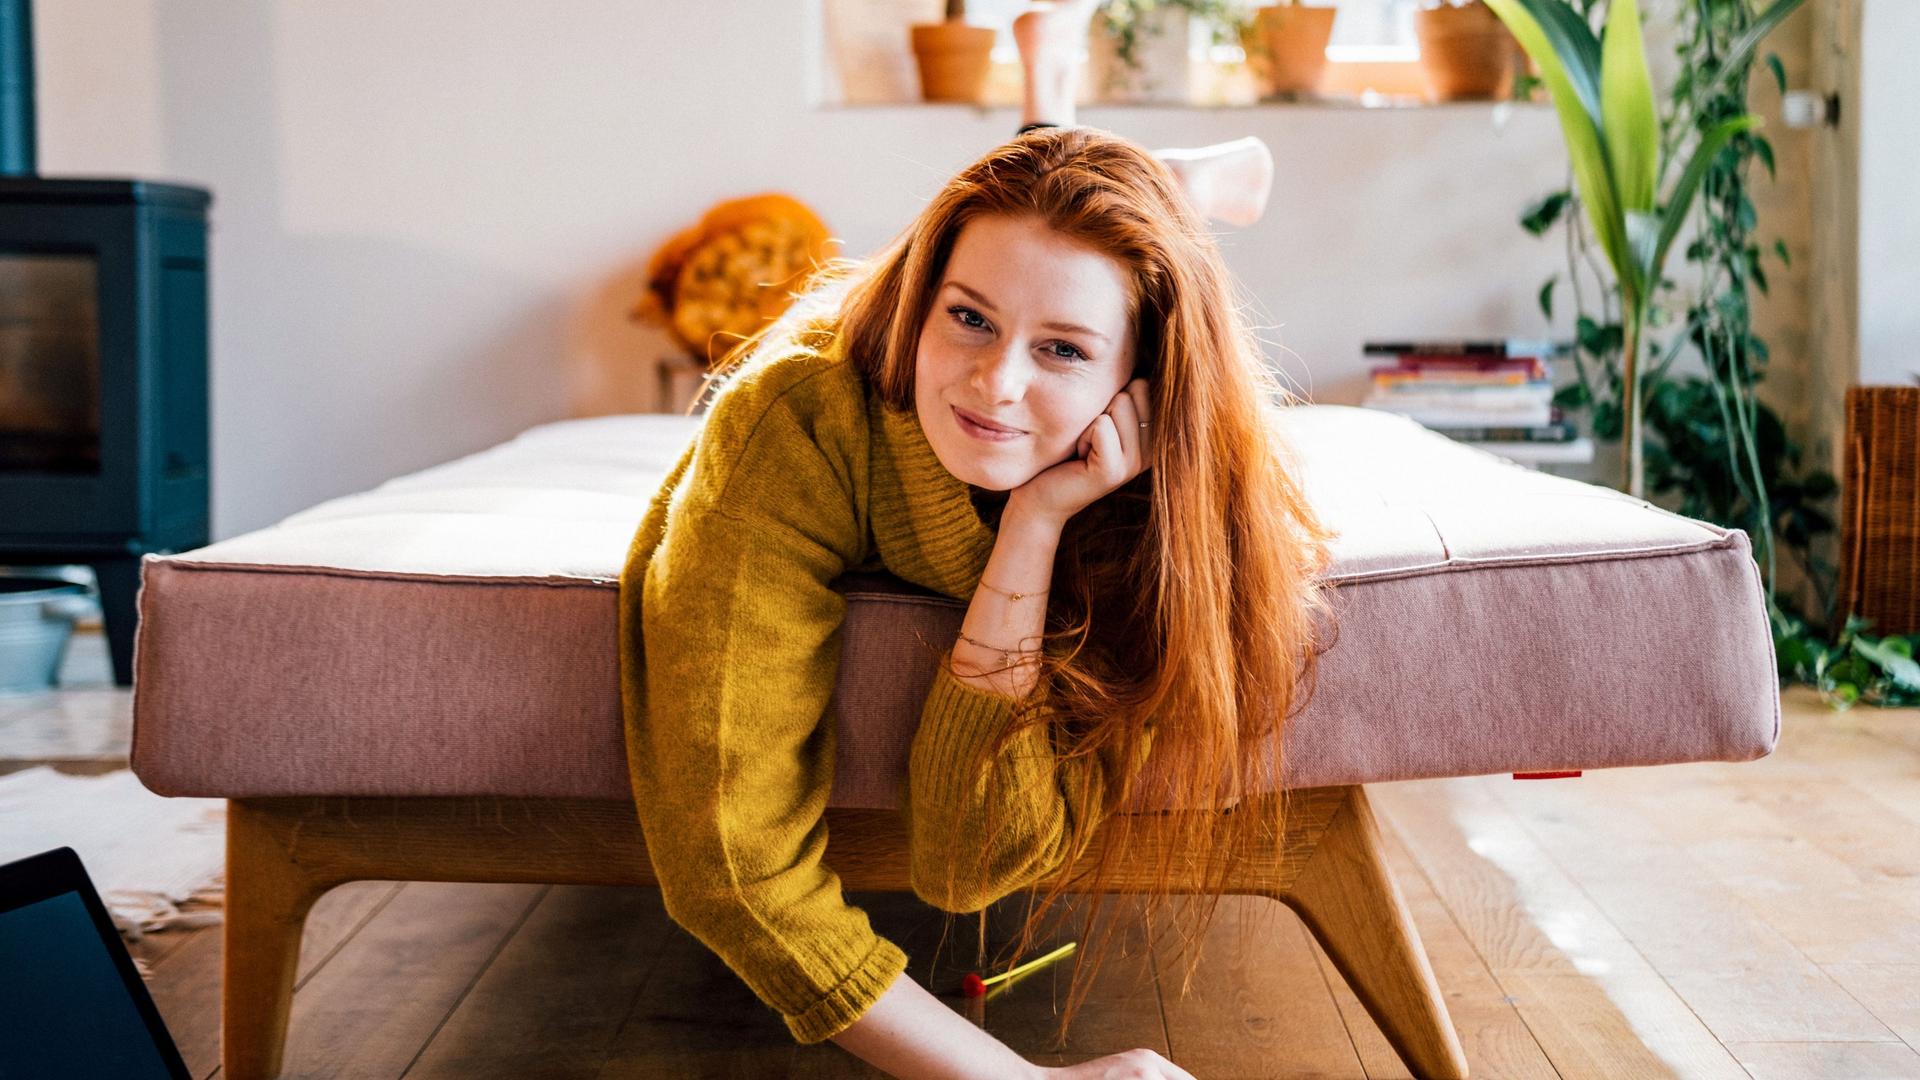 Portrait einer jungen Frau, die lächelnd im Wohnzimmer auf einem ausgezogenen Sofa liegt.